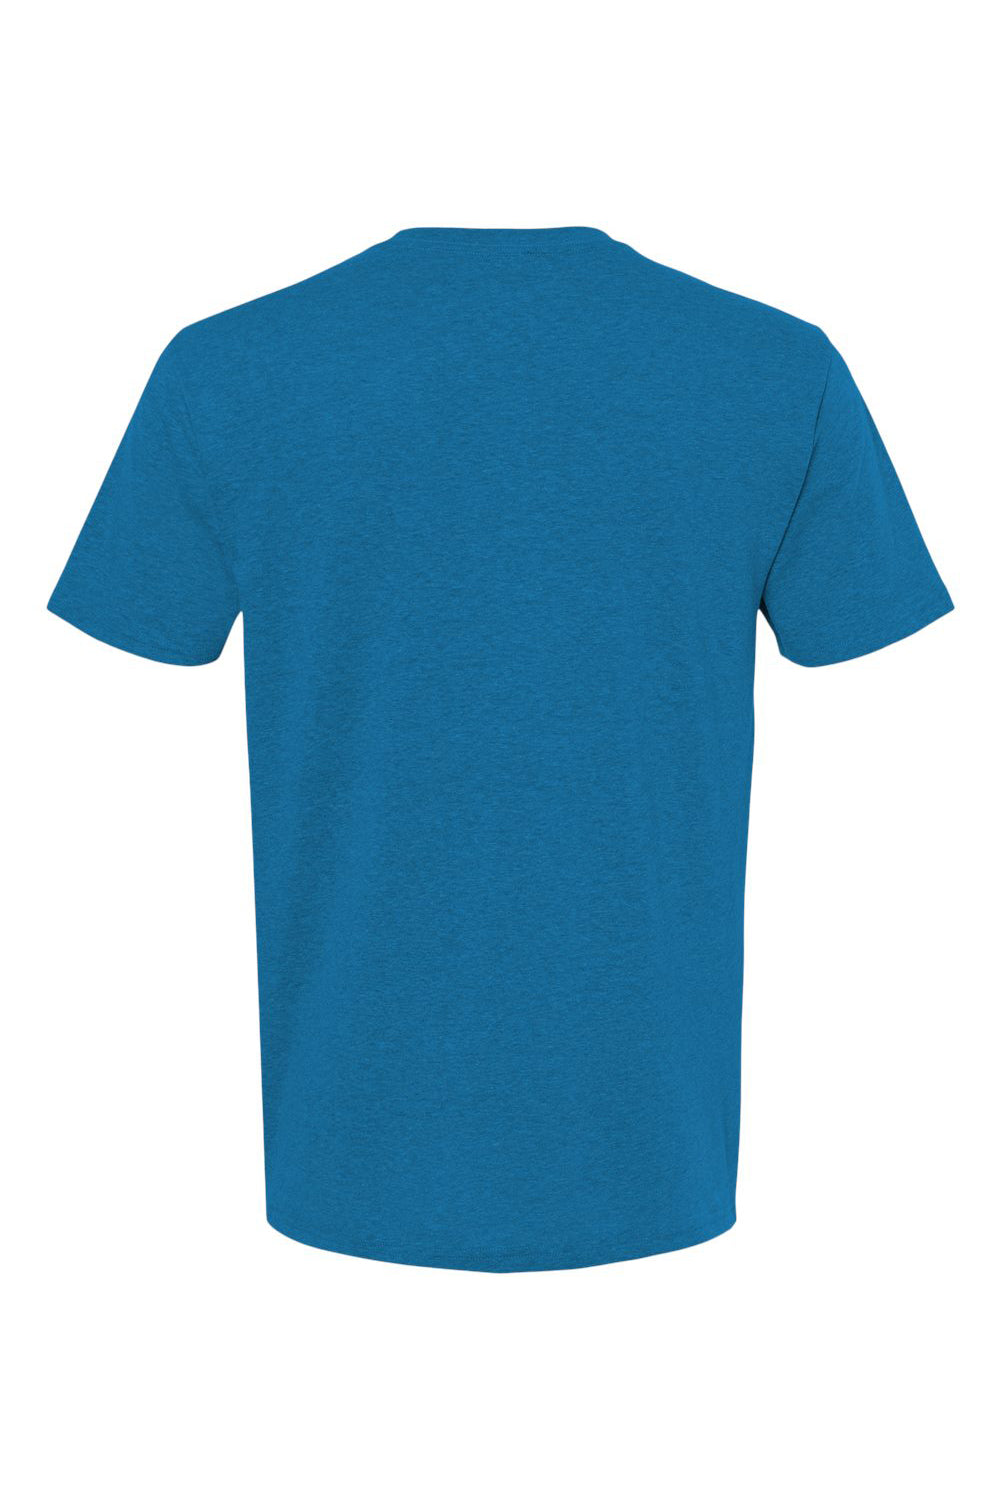 Kastlfel 2010 Mens RecycledSoft Short Sleve Crewneck T-Shirt Breaker Blue Flat Back